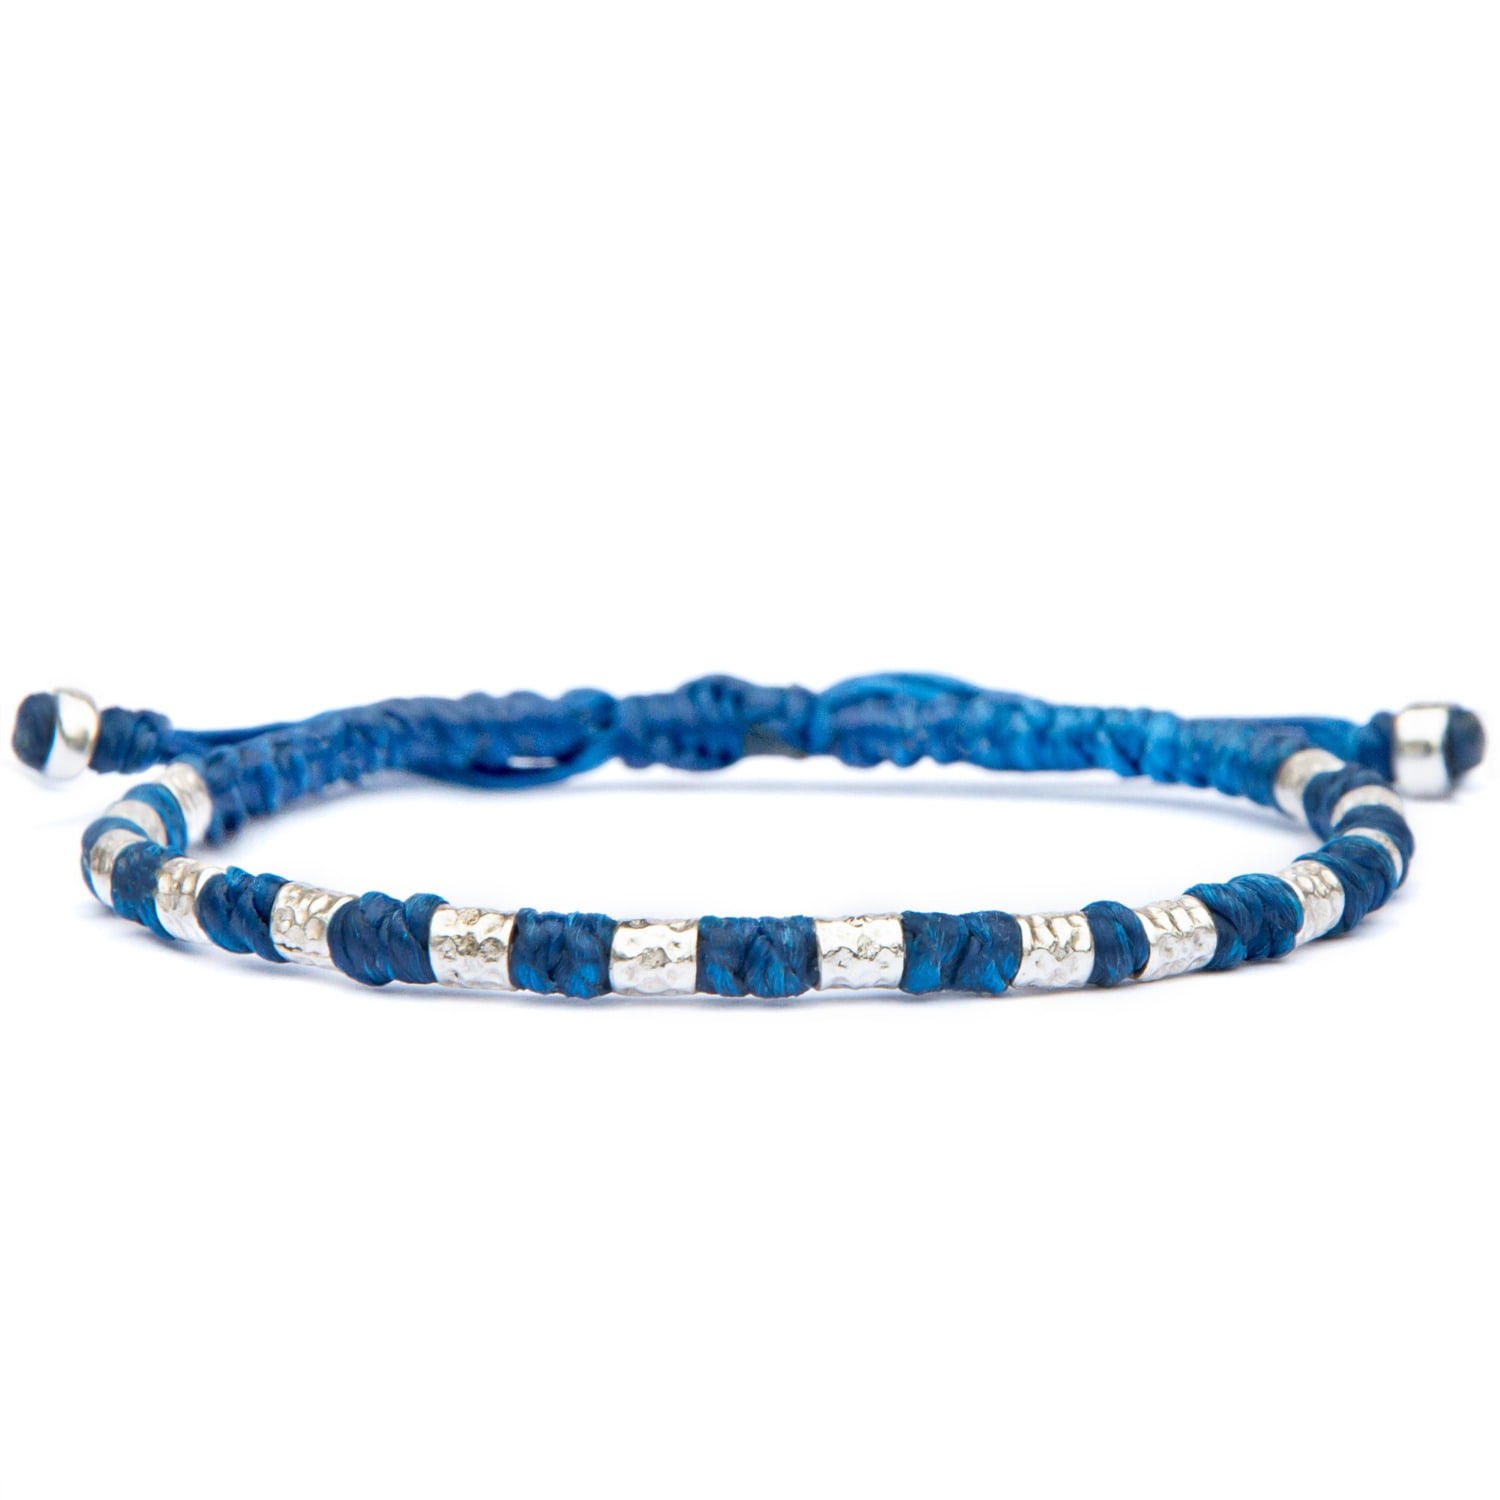 Viking Bracelet For Men - Yule Handmade Of Vegan Rope And Silver - Blue Harbour Uk Bracelets